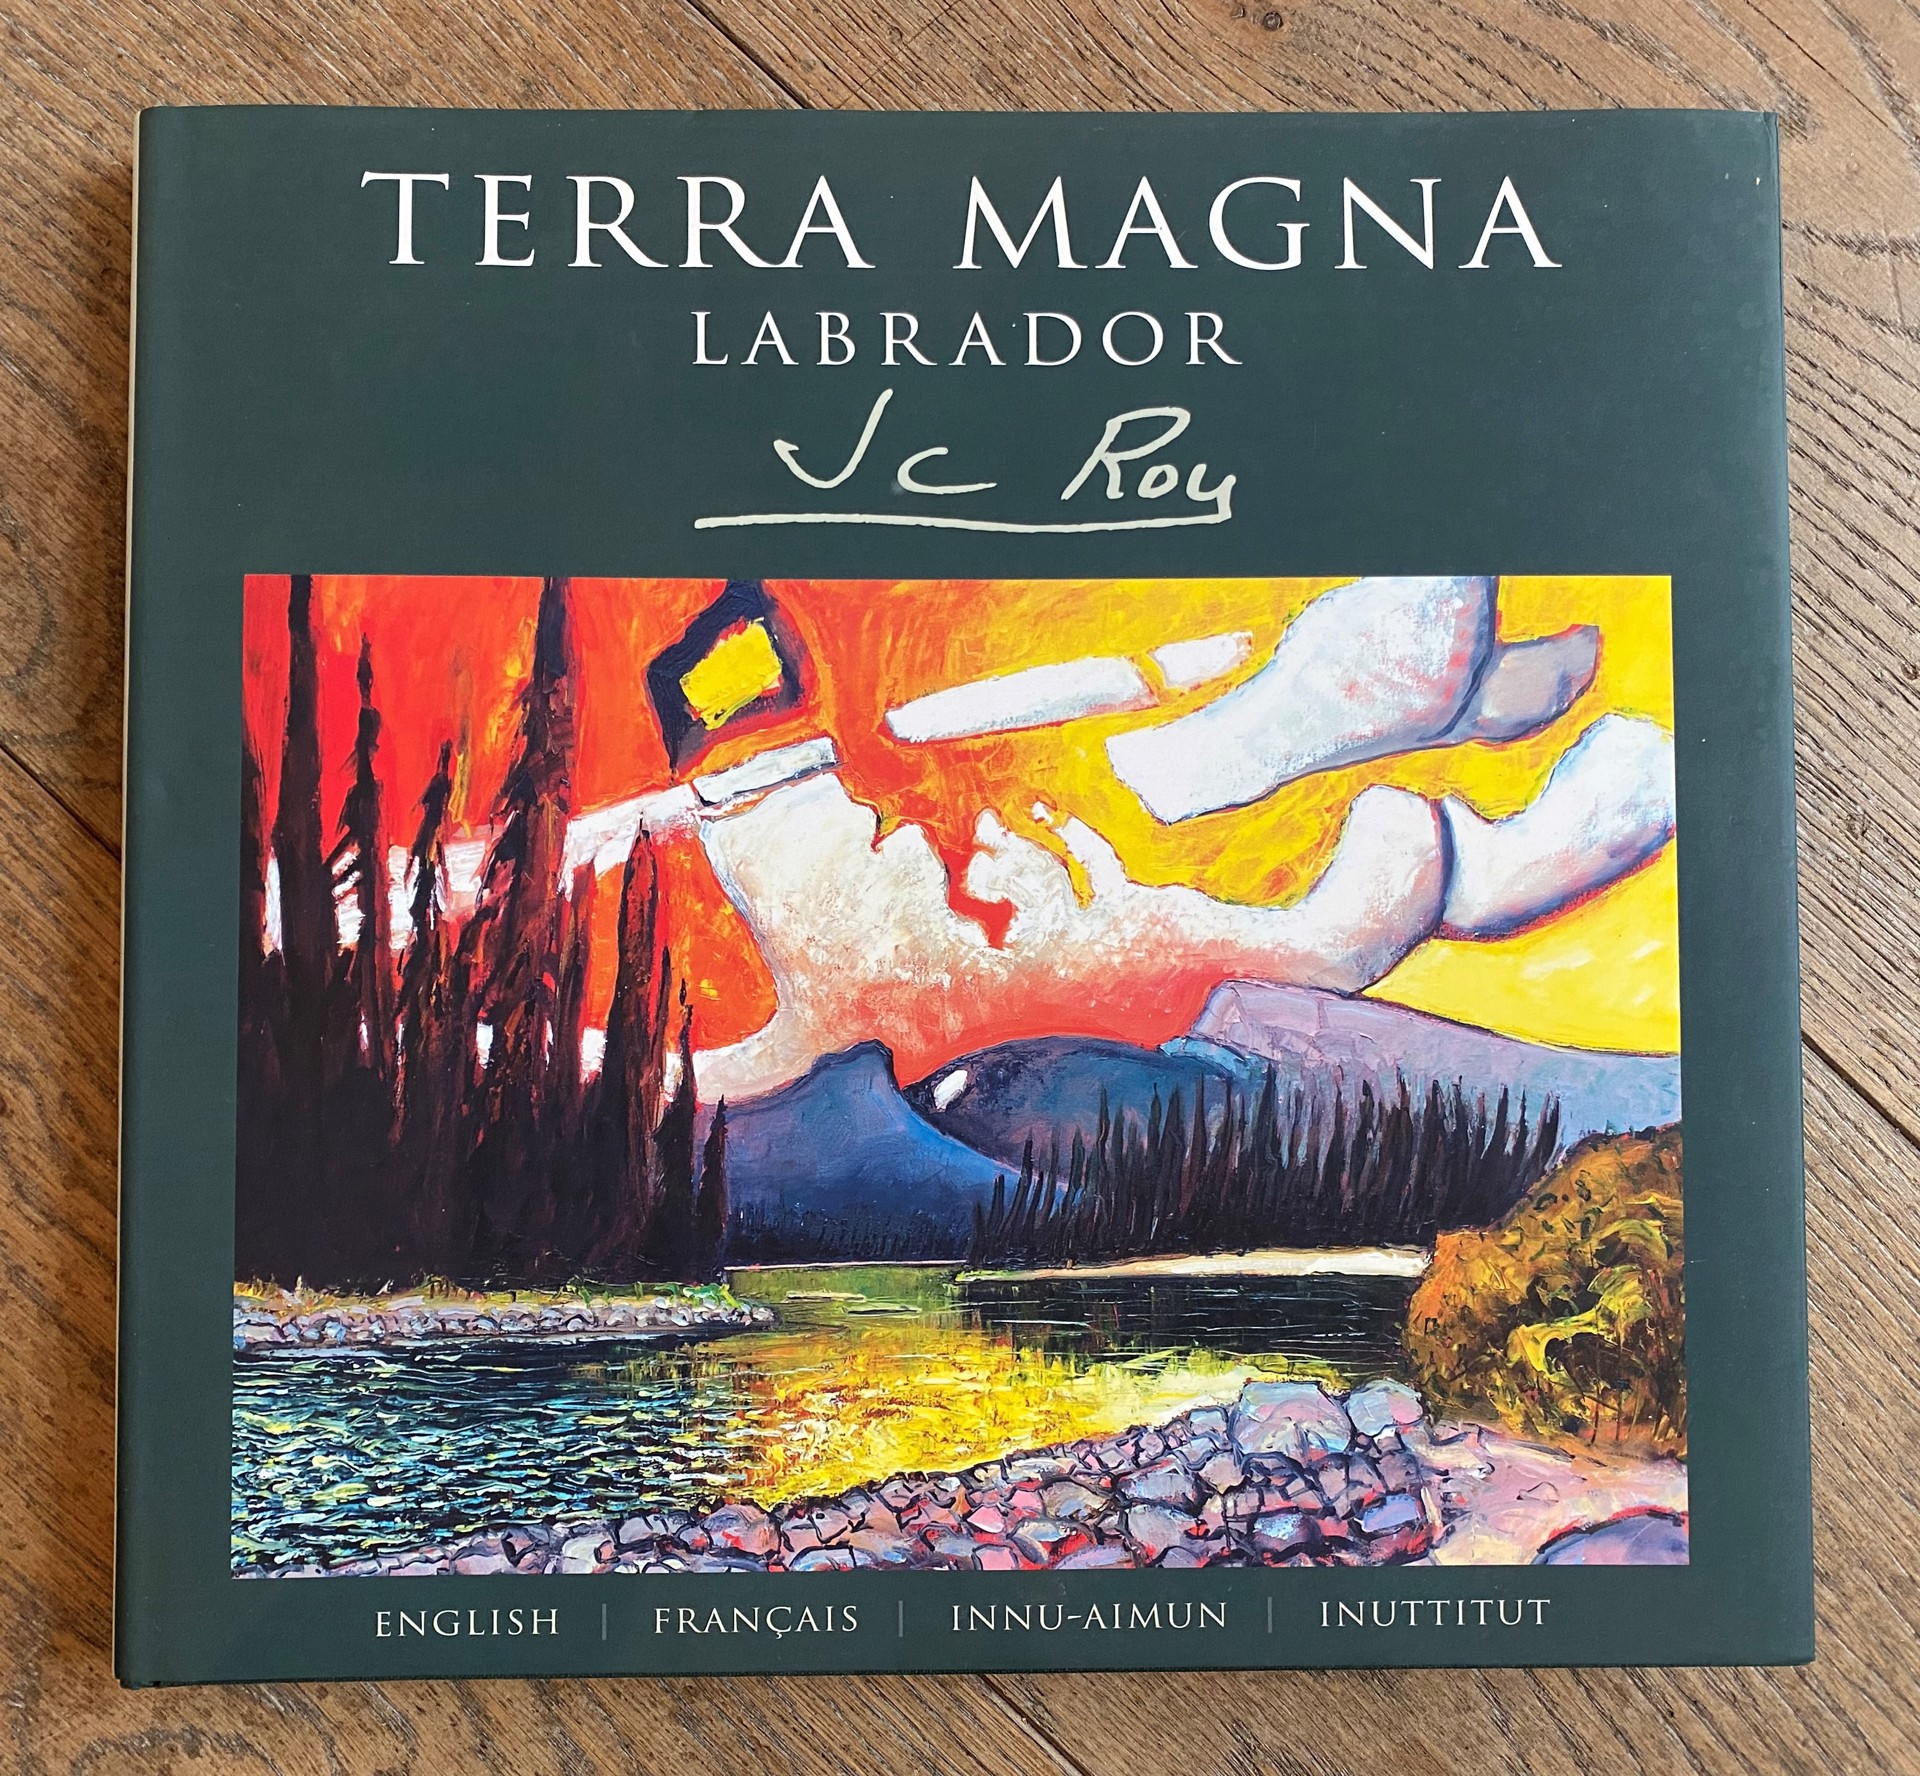 Terra Magna, Labrador JCR Book by Jean Claude Roy